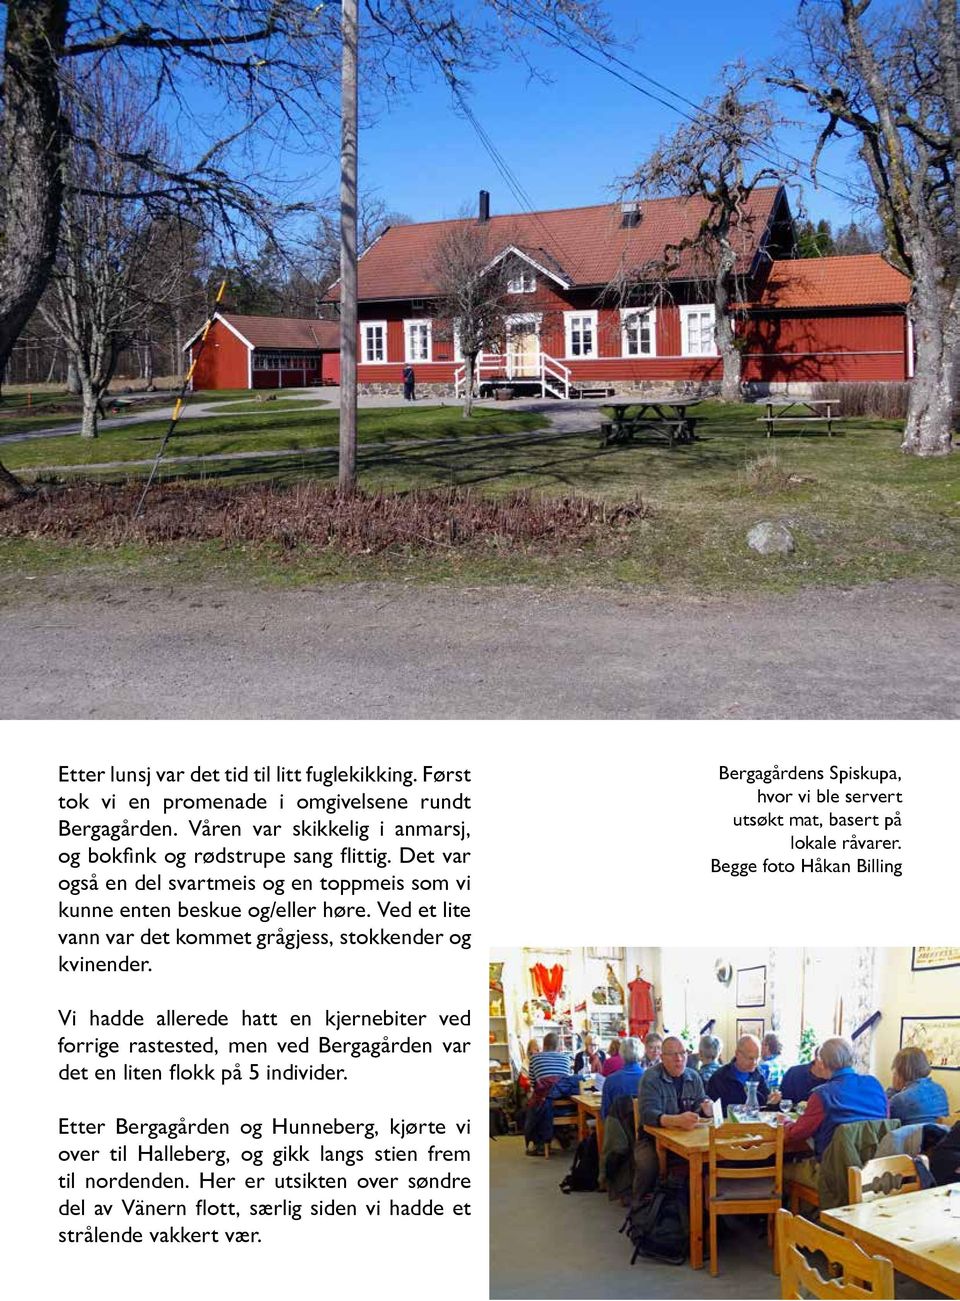 Bergagårdens Spiskupa, hvor vi ble servert utsøkt mat, basert på lokale råvarer.